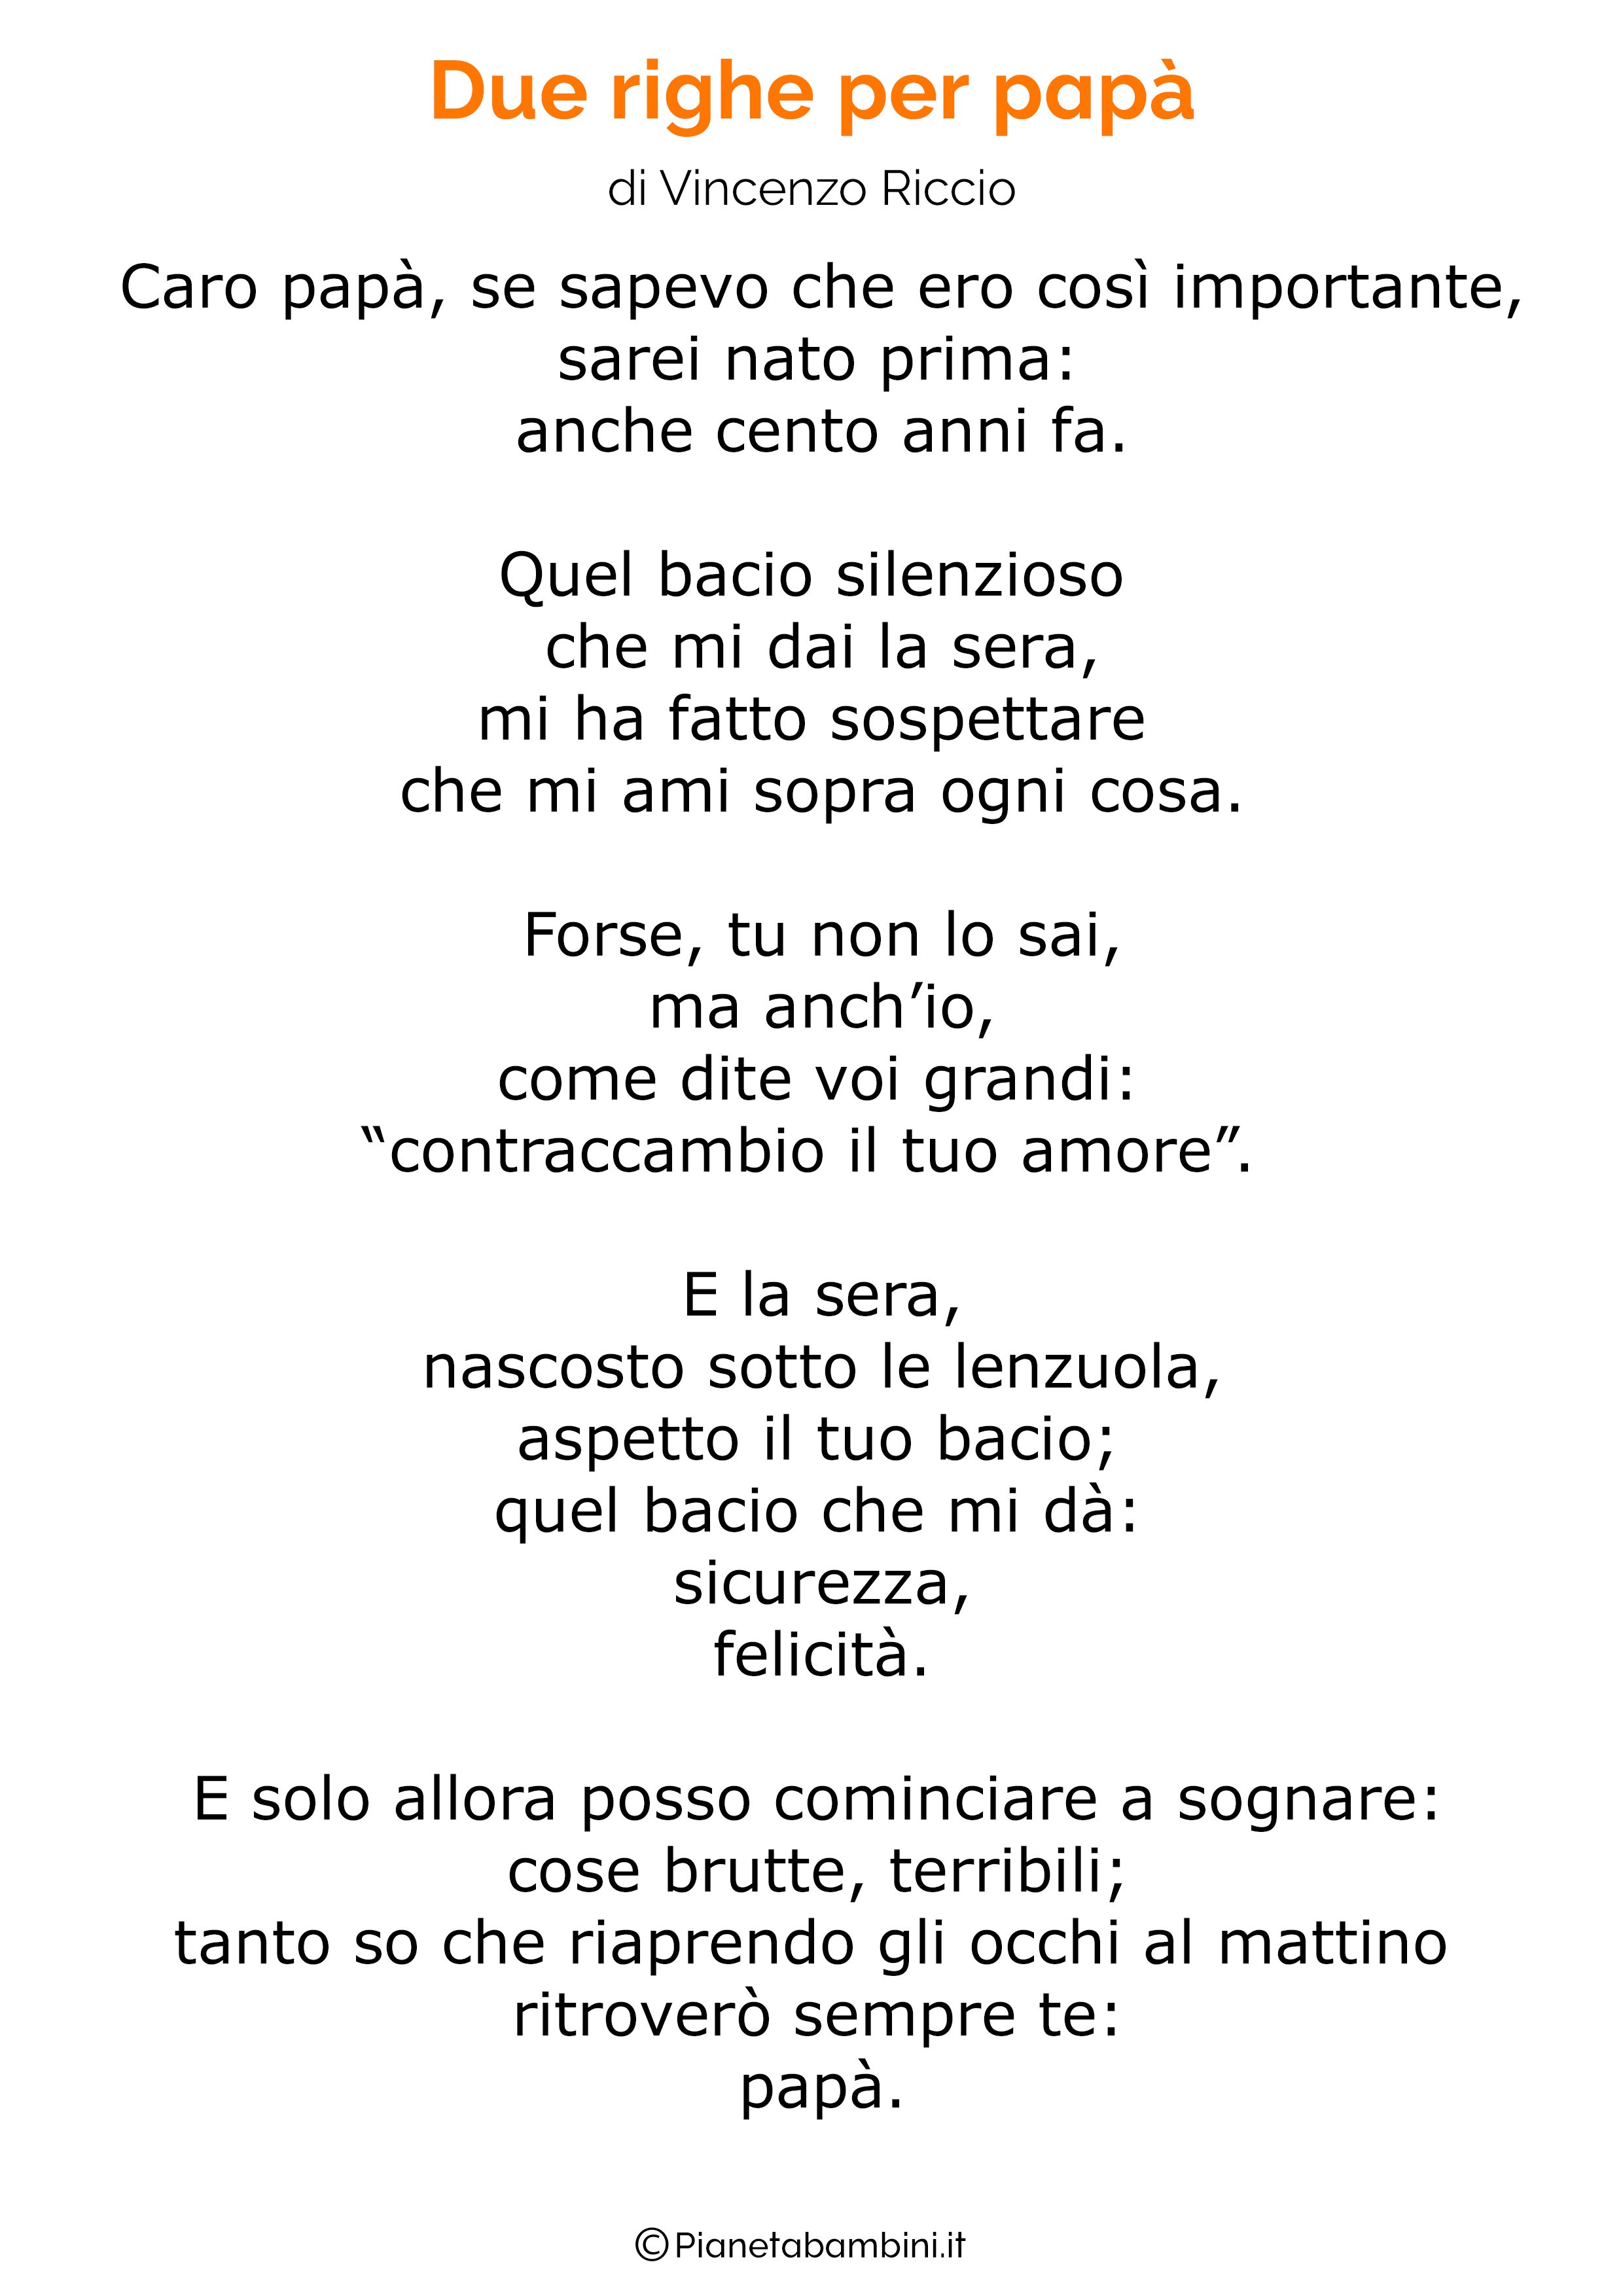 Poesia per la festa del papa per bambini 02